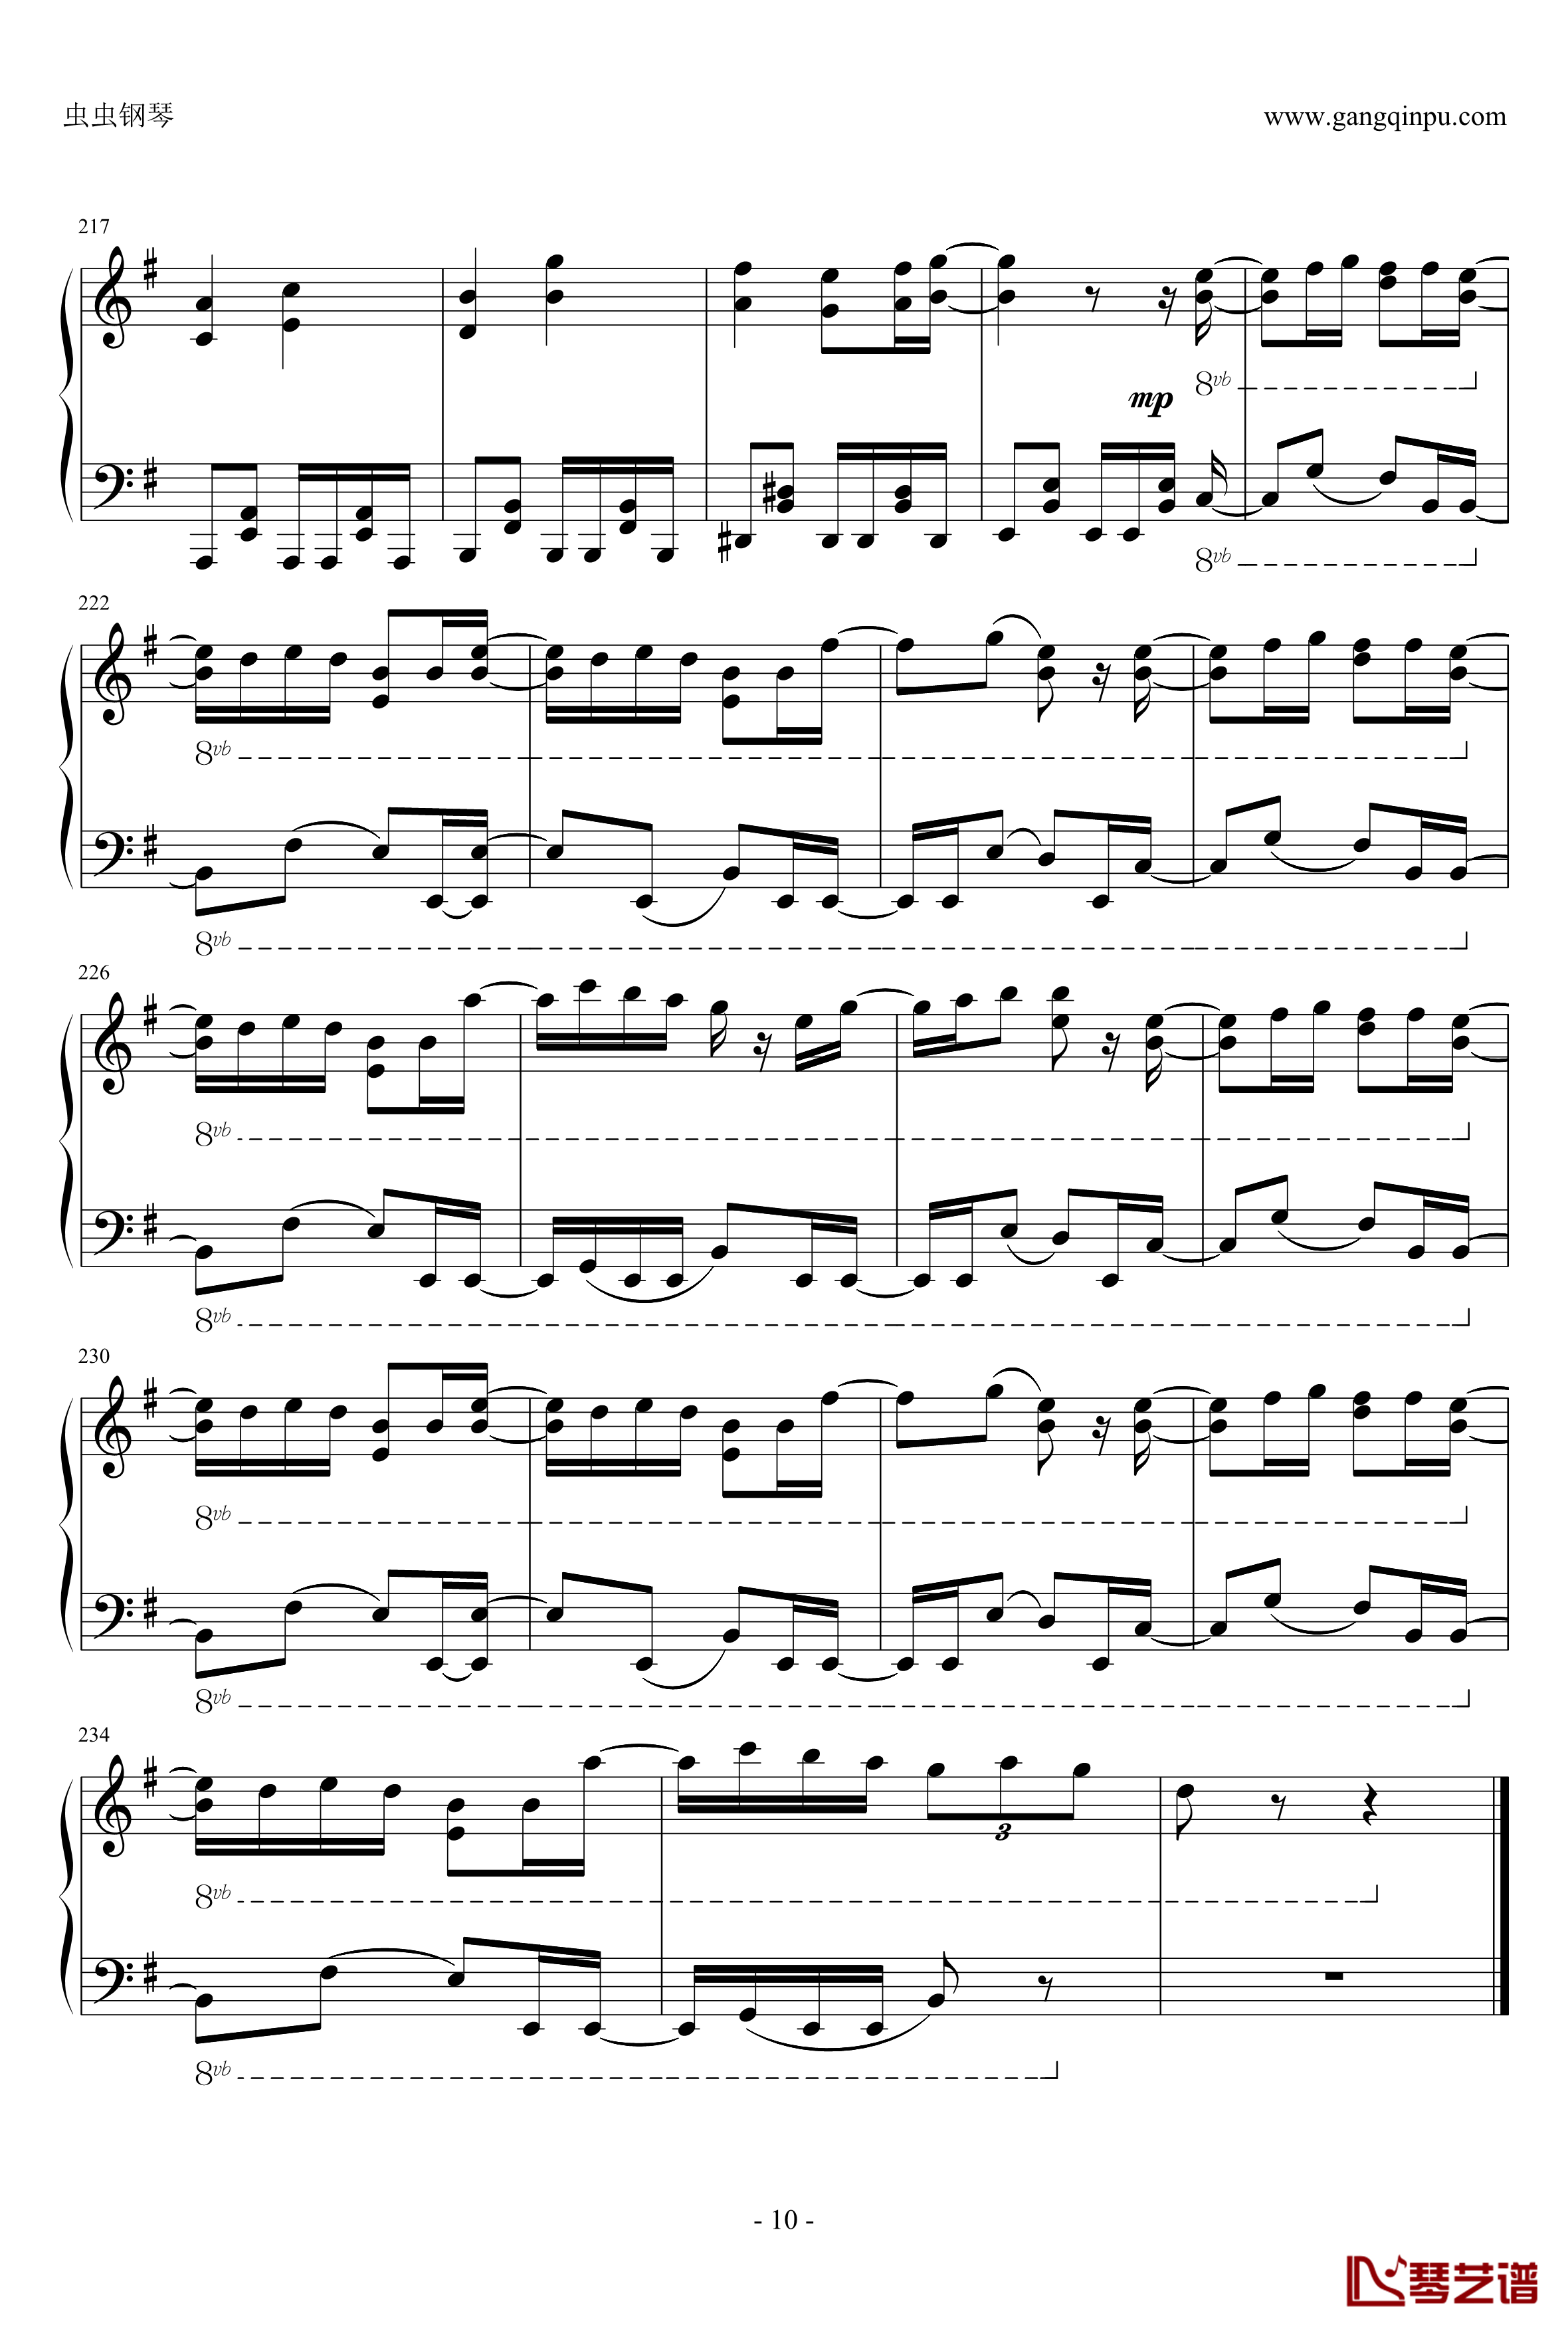 リンネ钢琴谱-piano ver. 改-初音ミク-初音未来10